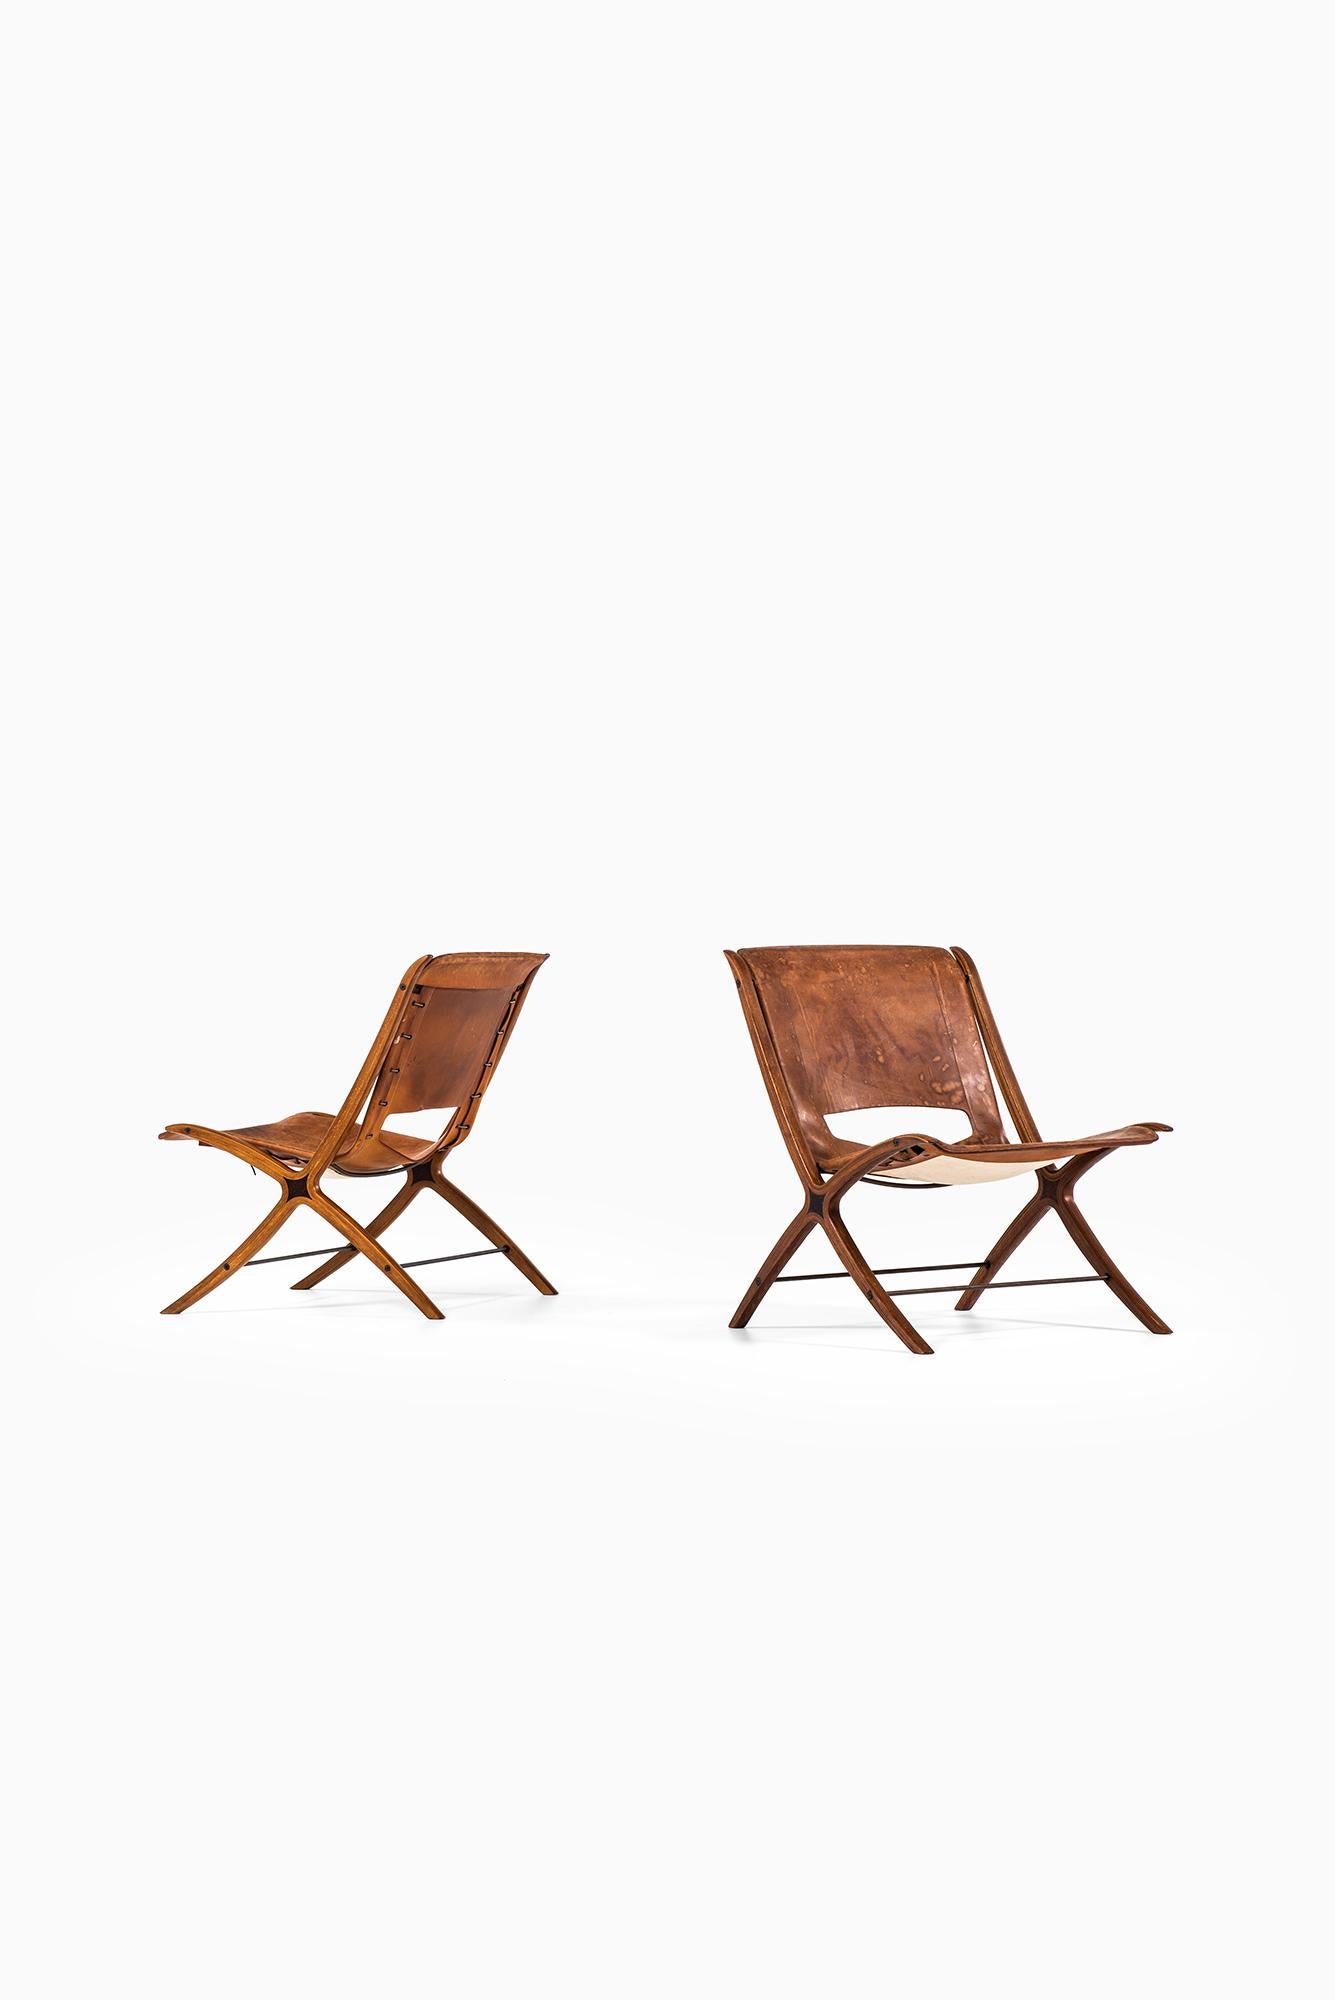 Peter Hvidt & Orla Mølgaard-Nielsen x Easy Chair by Fritz Hansen in Denmark For Sale 5